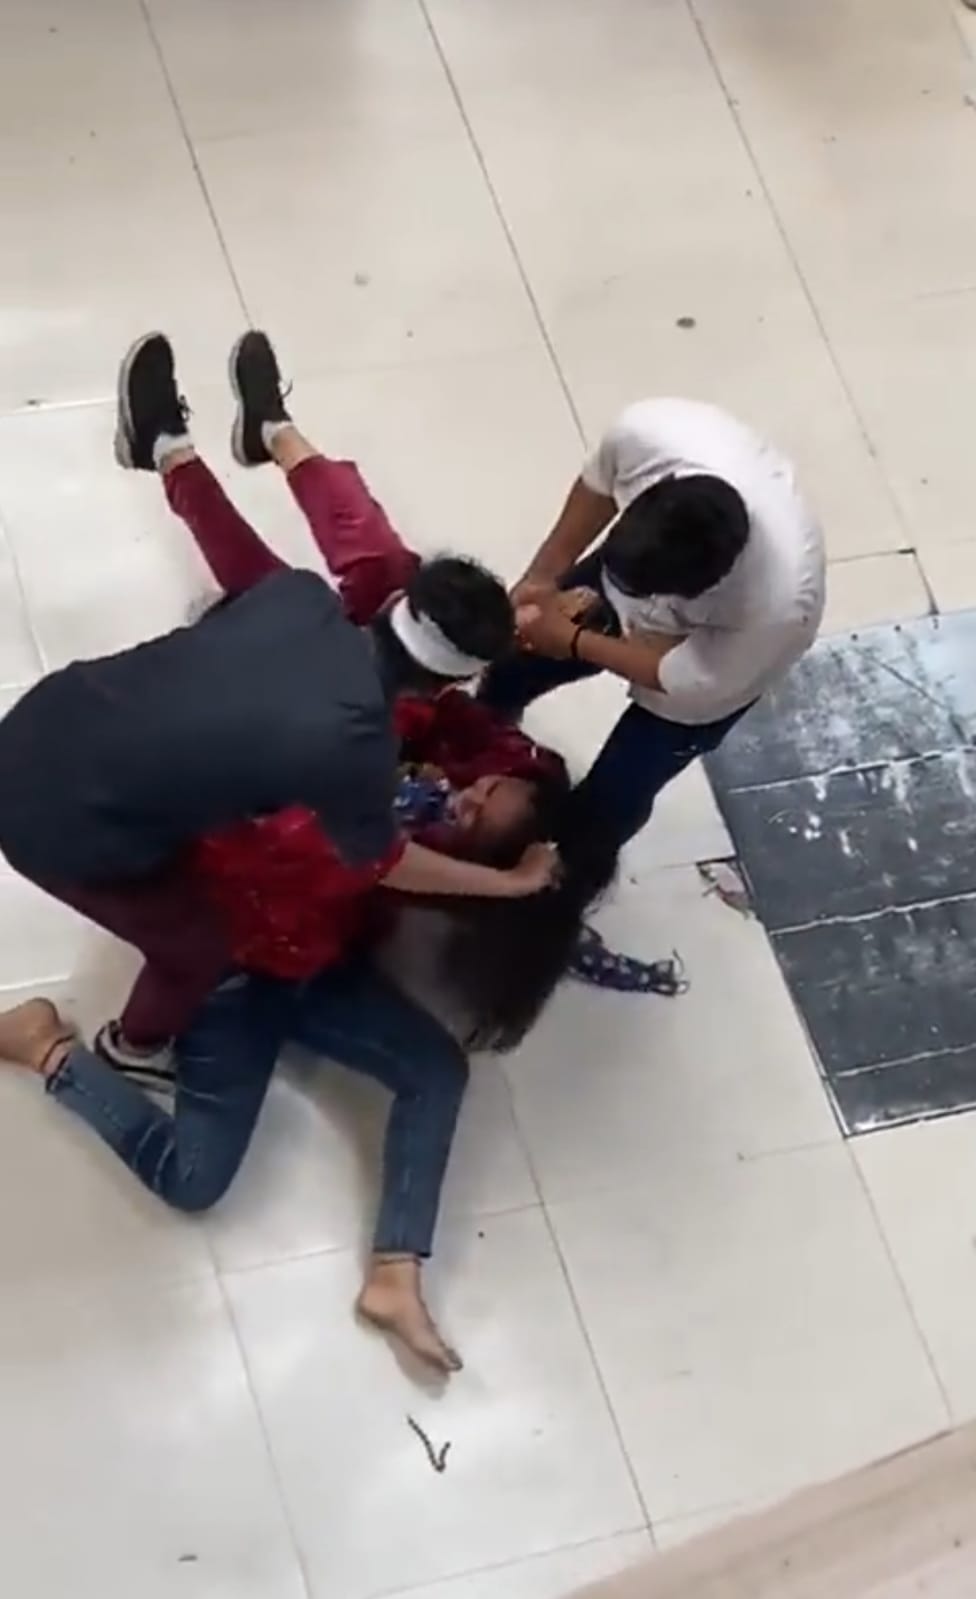 Girls fight in Grand Plaza Mall UP: मॉल में 2 लड़कियों के बीच चले जमकर लात-घुसे